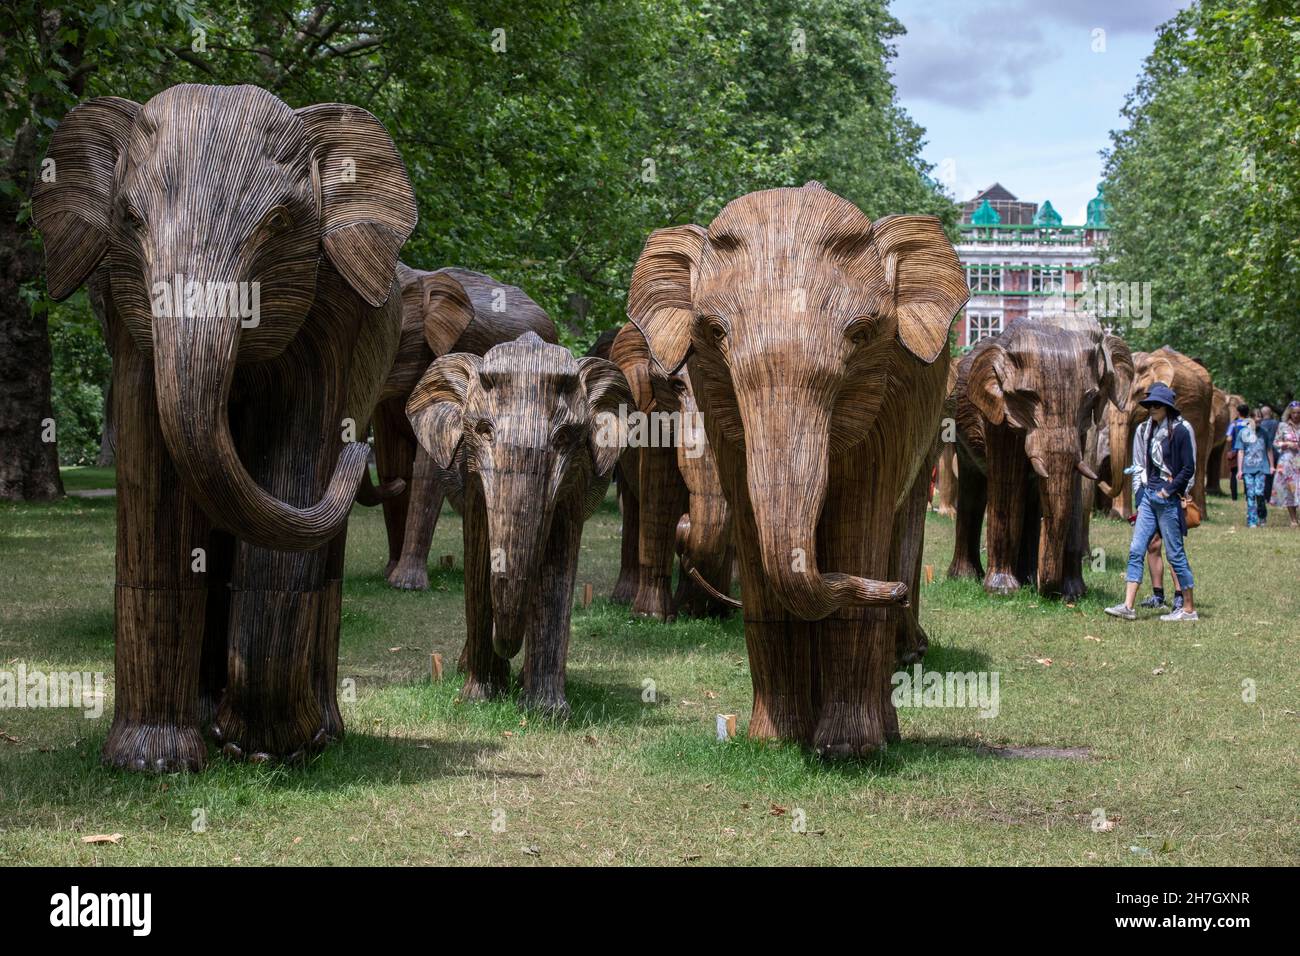 Exposición de arte ambiental de coexistencia con 100 elefantes de lantana de tamaño natural en Green Park, recaudó más de 3m libras para proyectos de vida silvestre y humana, Londres. Foto de stock